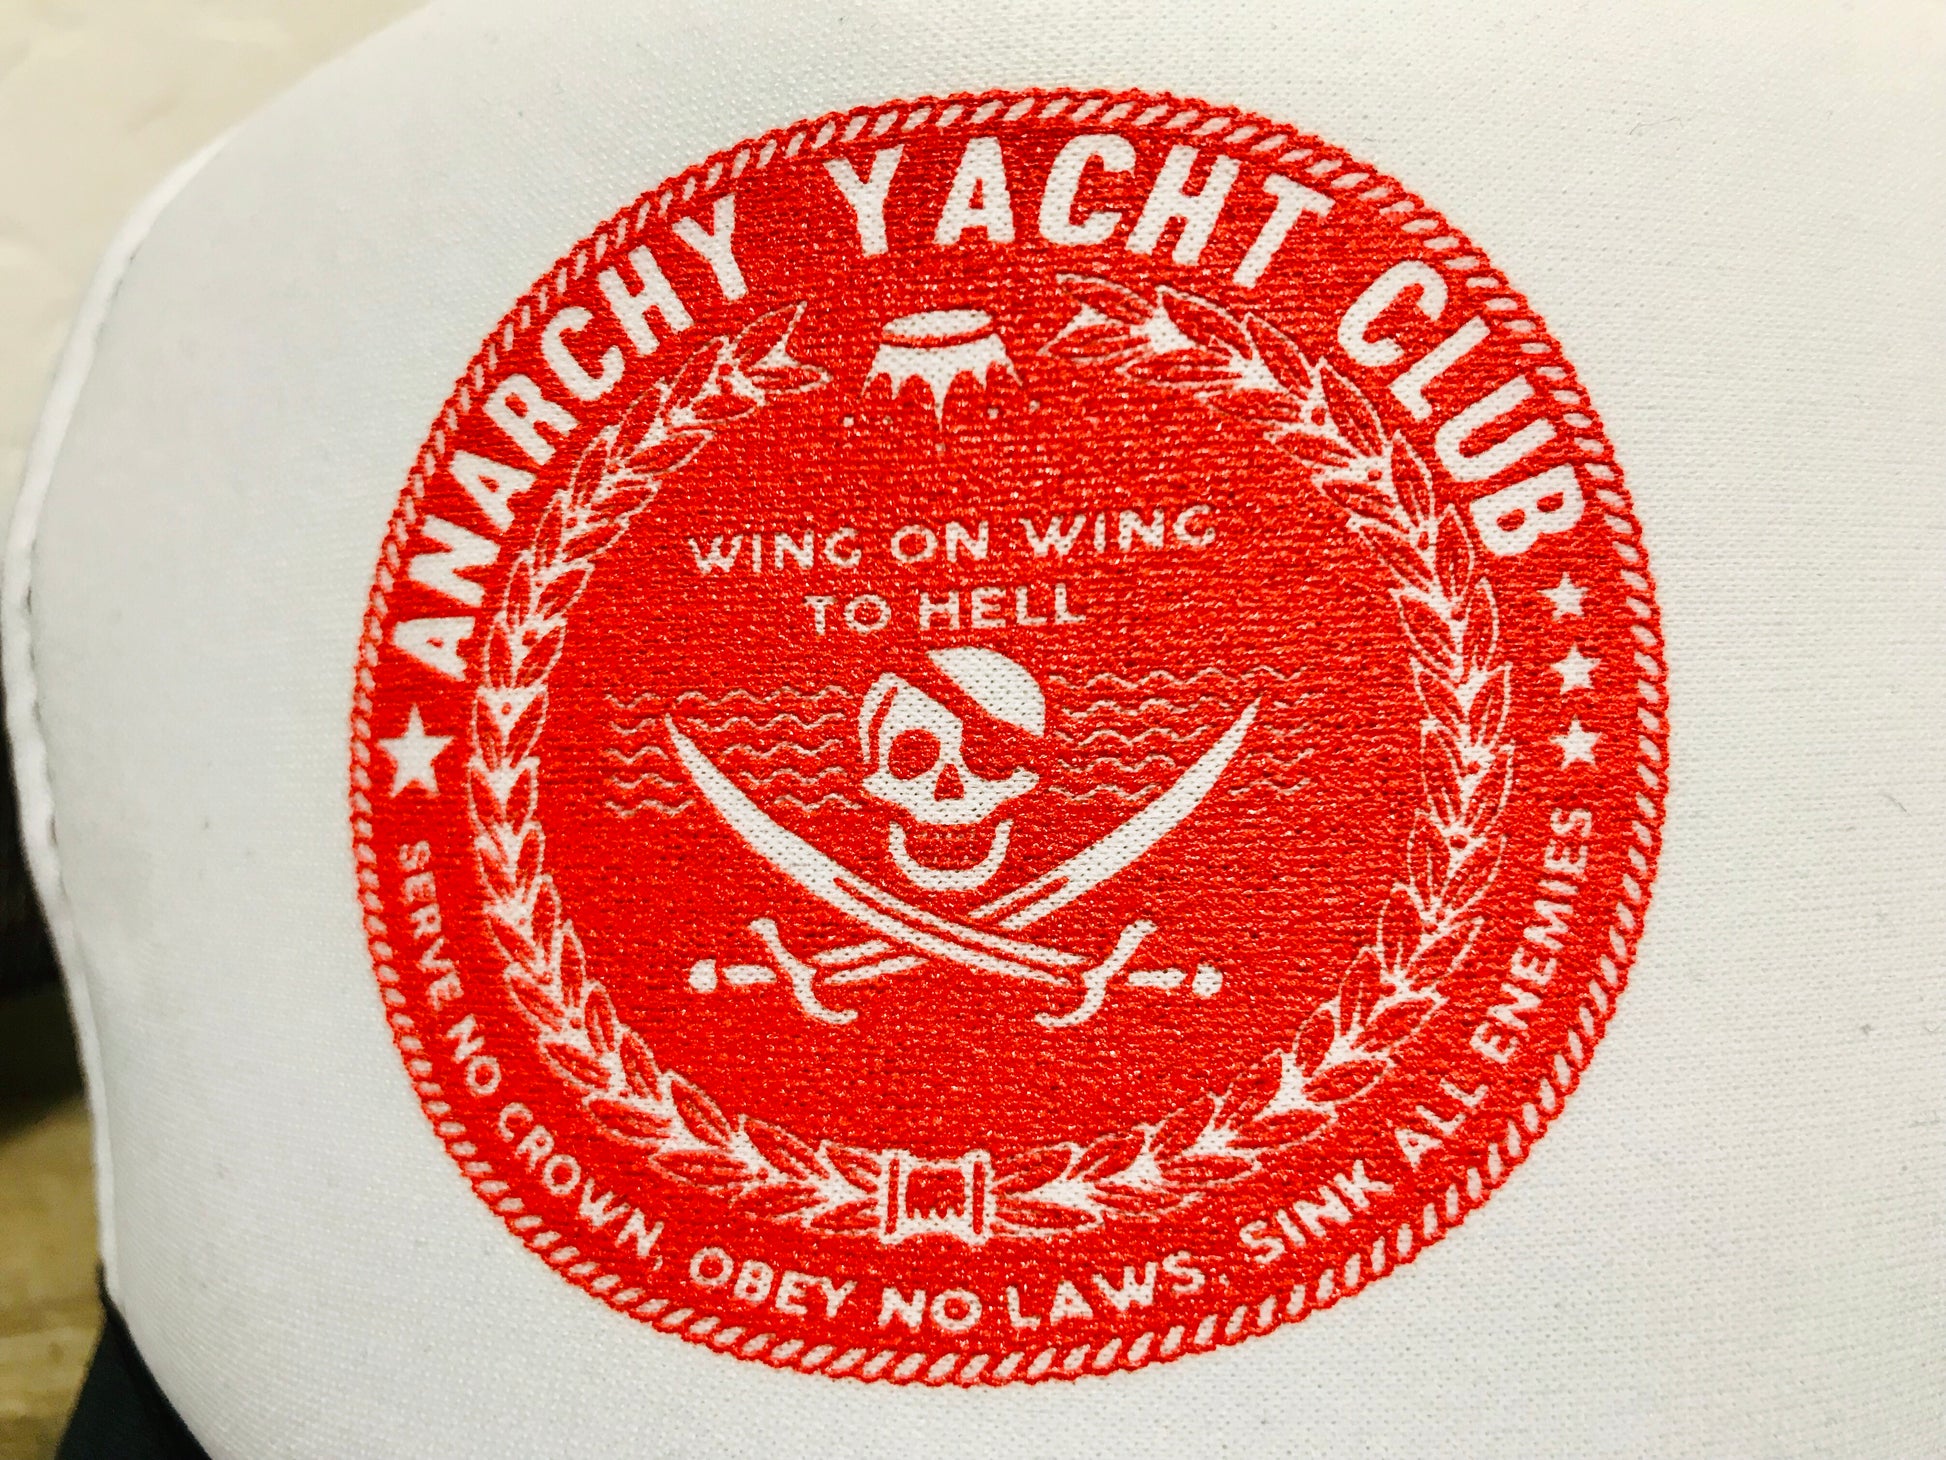 anarchy yacht club logo